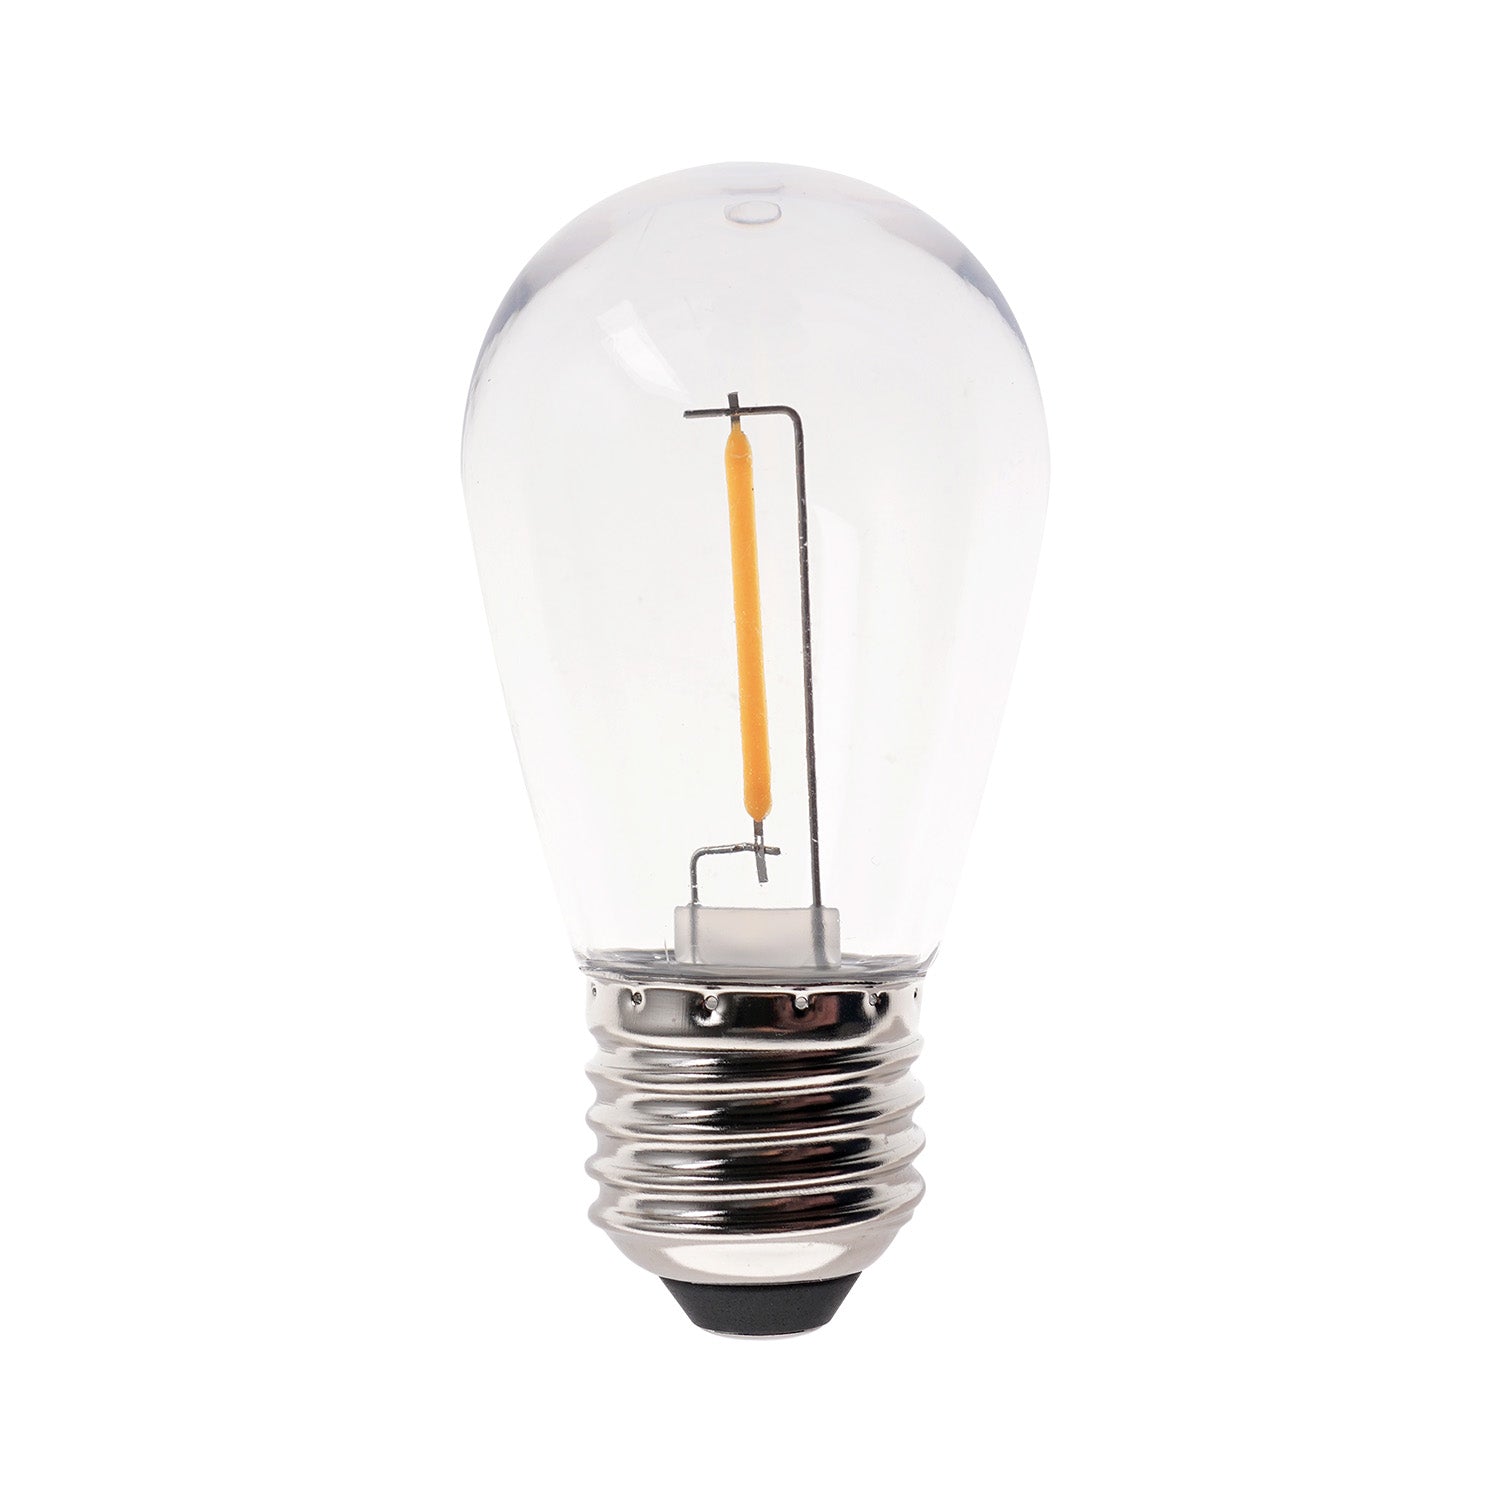 Deco bulb x 5, E27 12V (warm white)